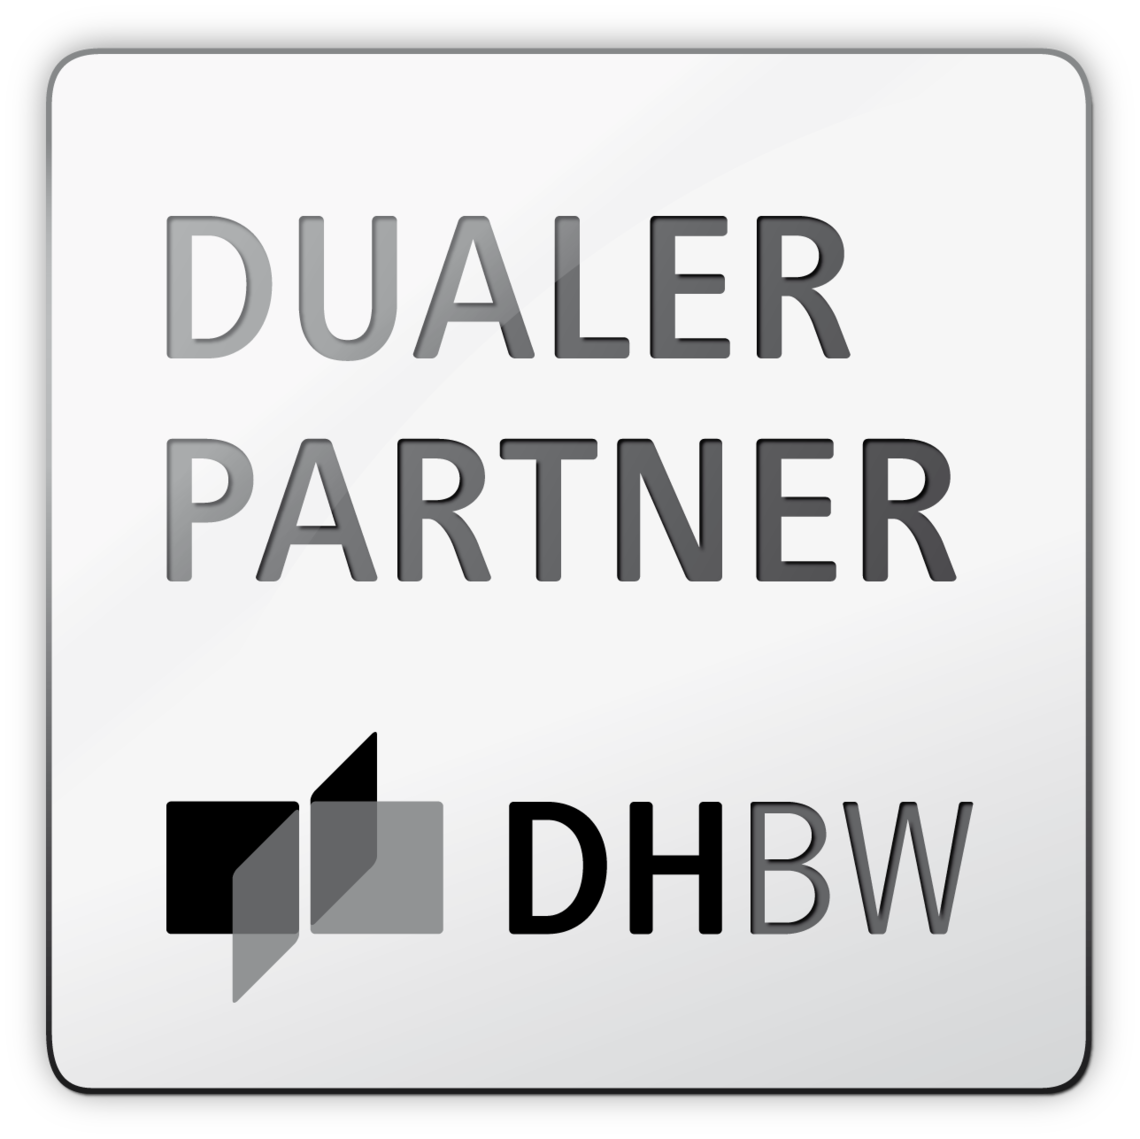 DHBW Partner logo